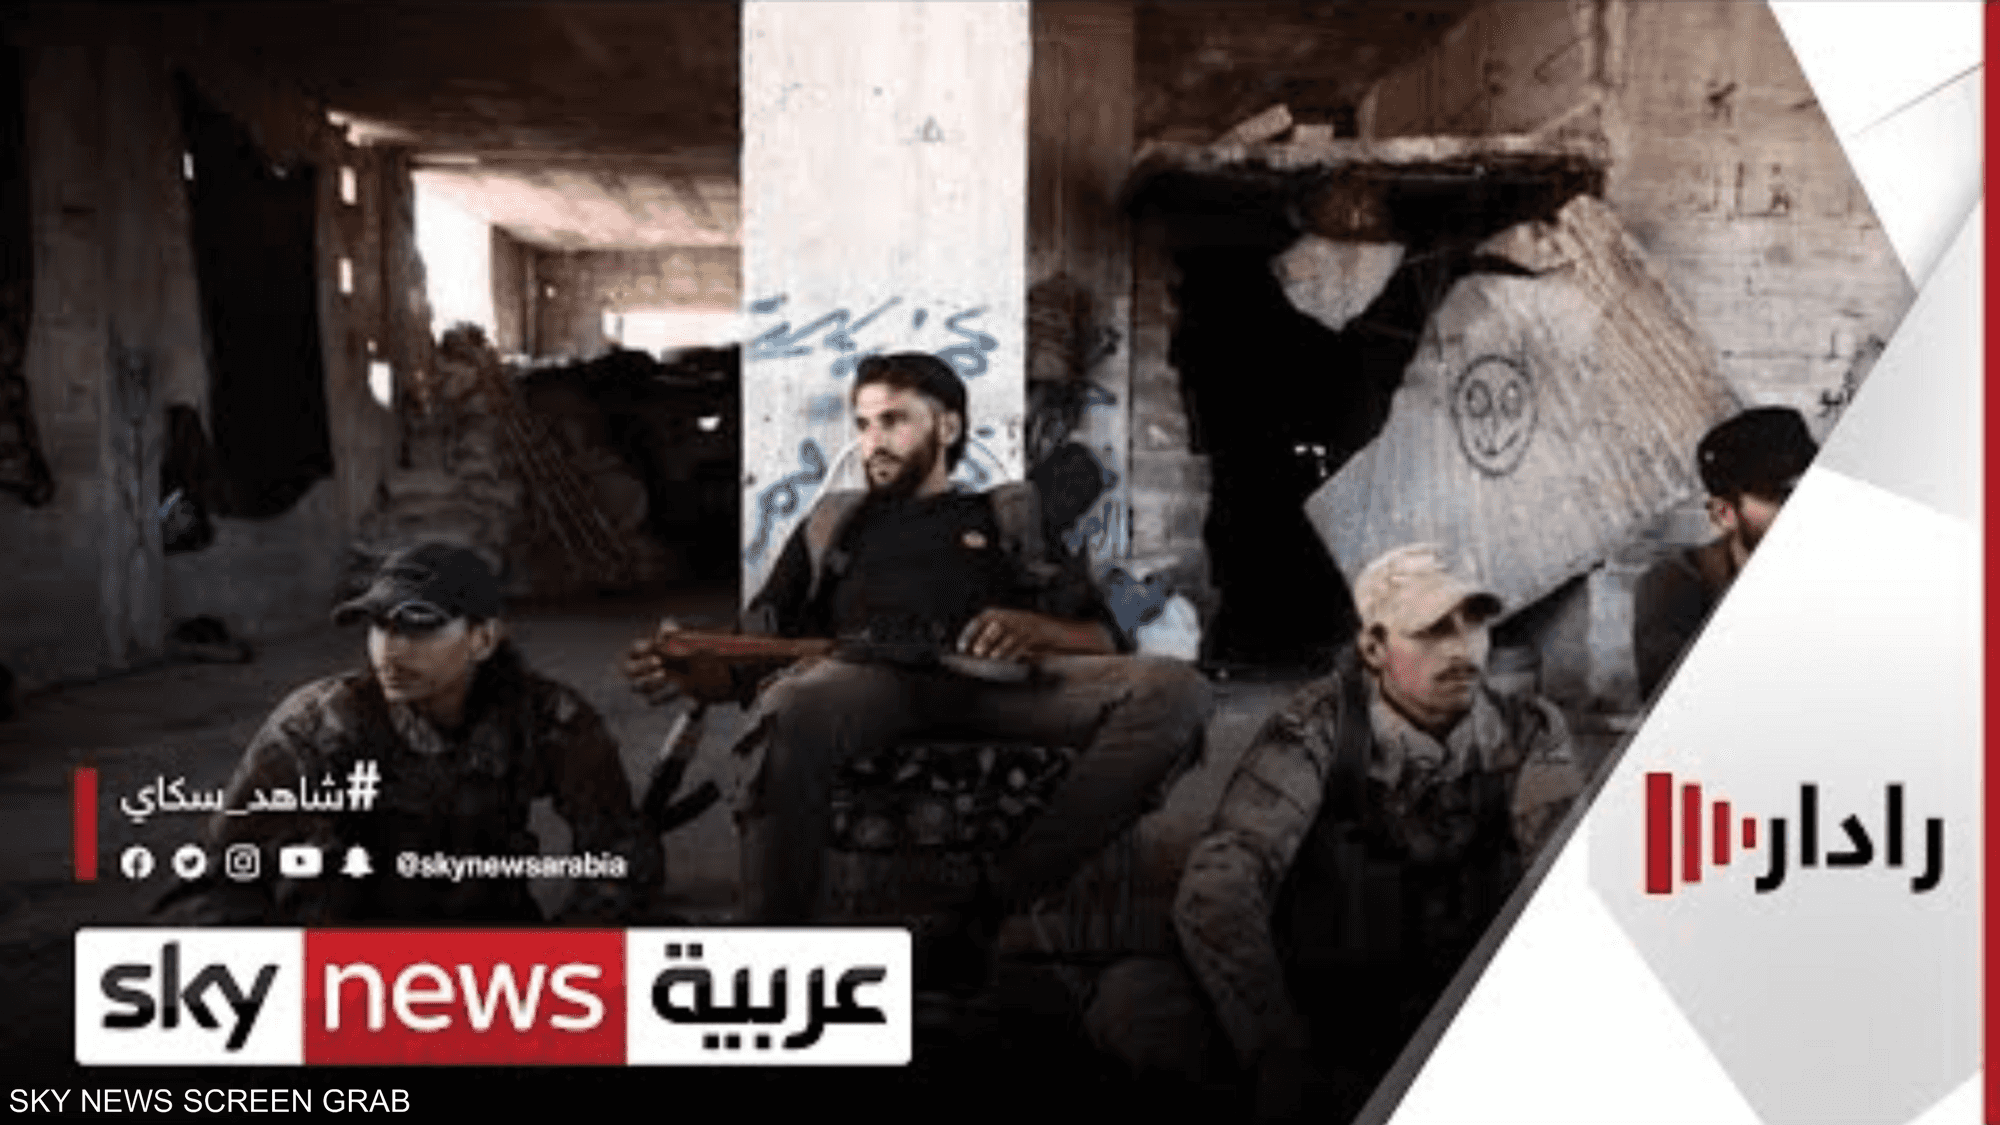 المرصد: 'فيلق الشام' هو الجناح العسكري لتنظيم الإخوان